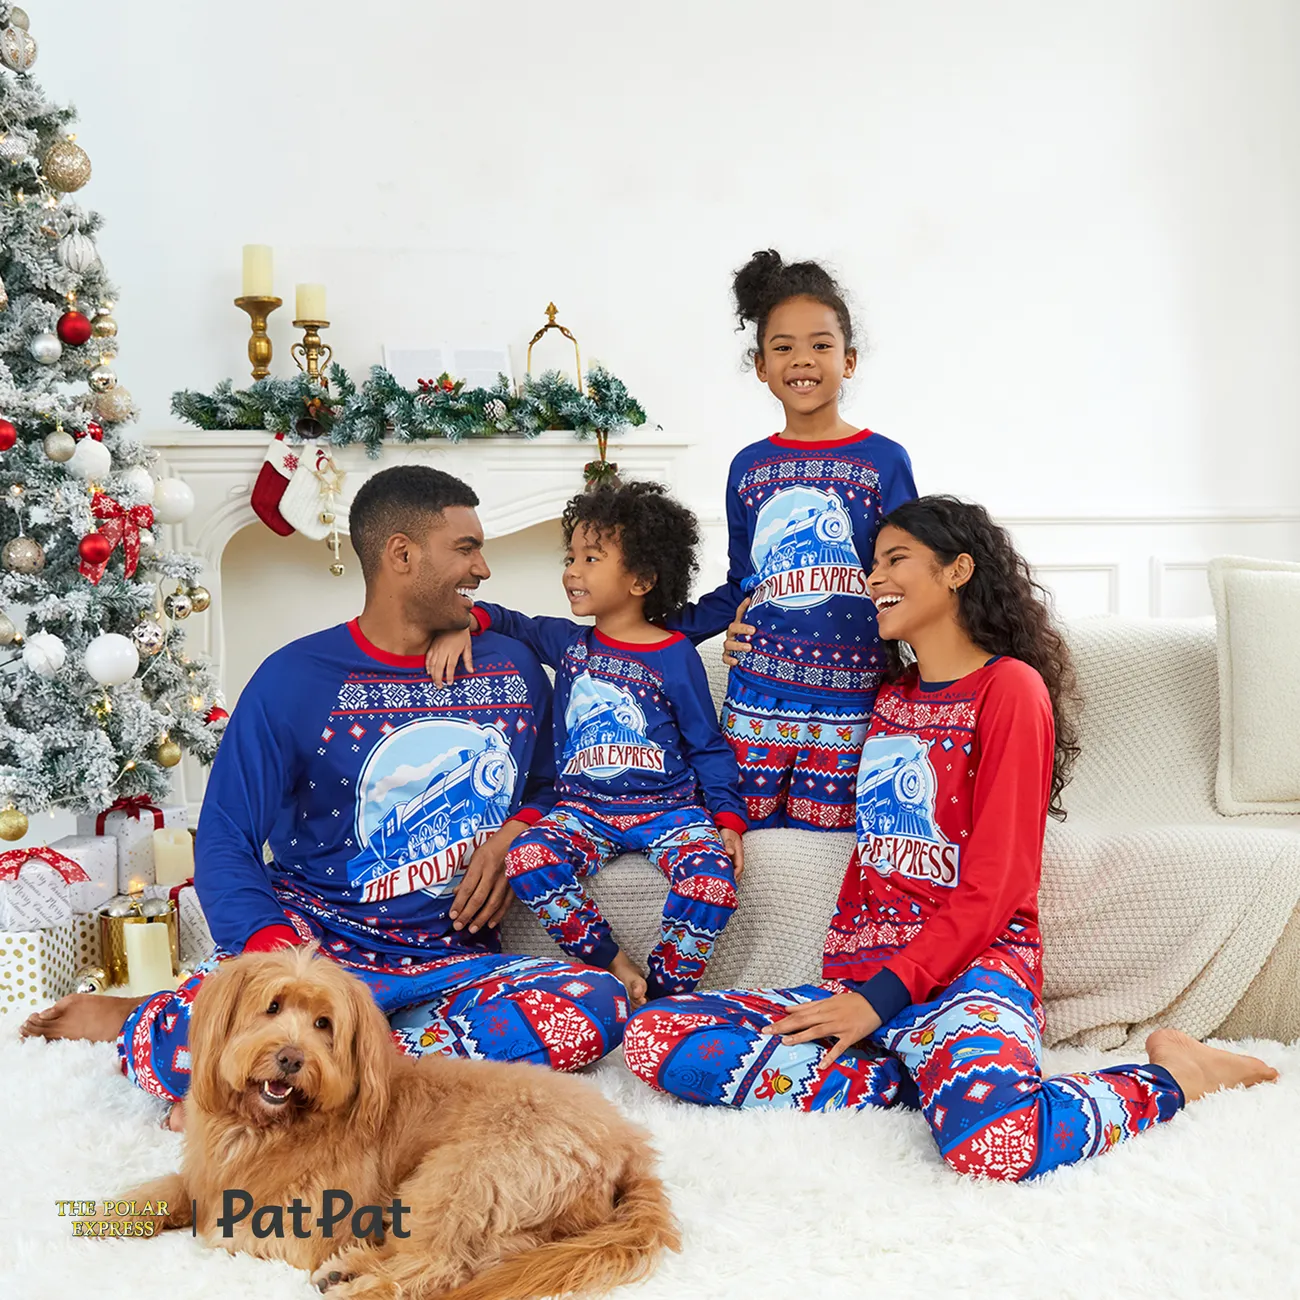 The Polar Express Natal Look de família Manga comprida Conjuntos de roupa para a família Pijamas (Flame Resistant) Multicolorido big image 1